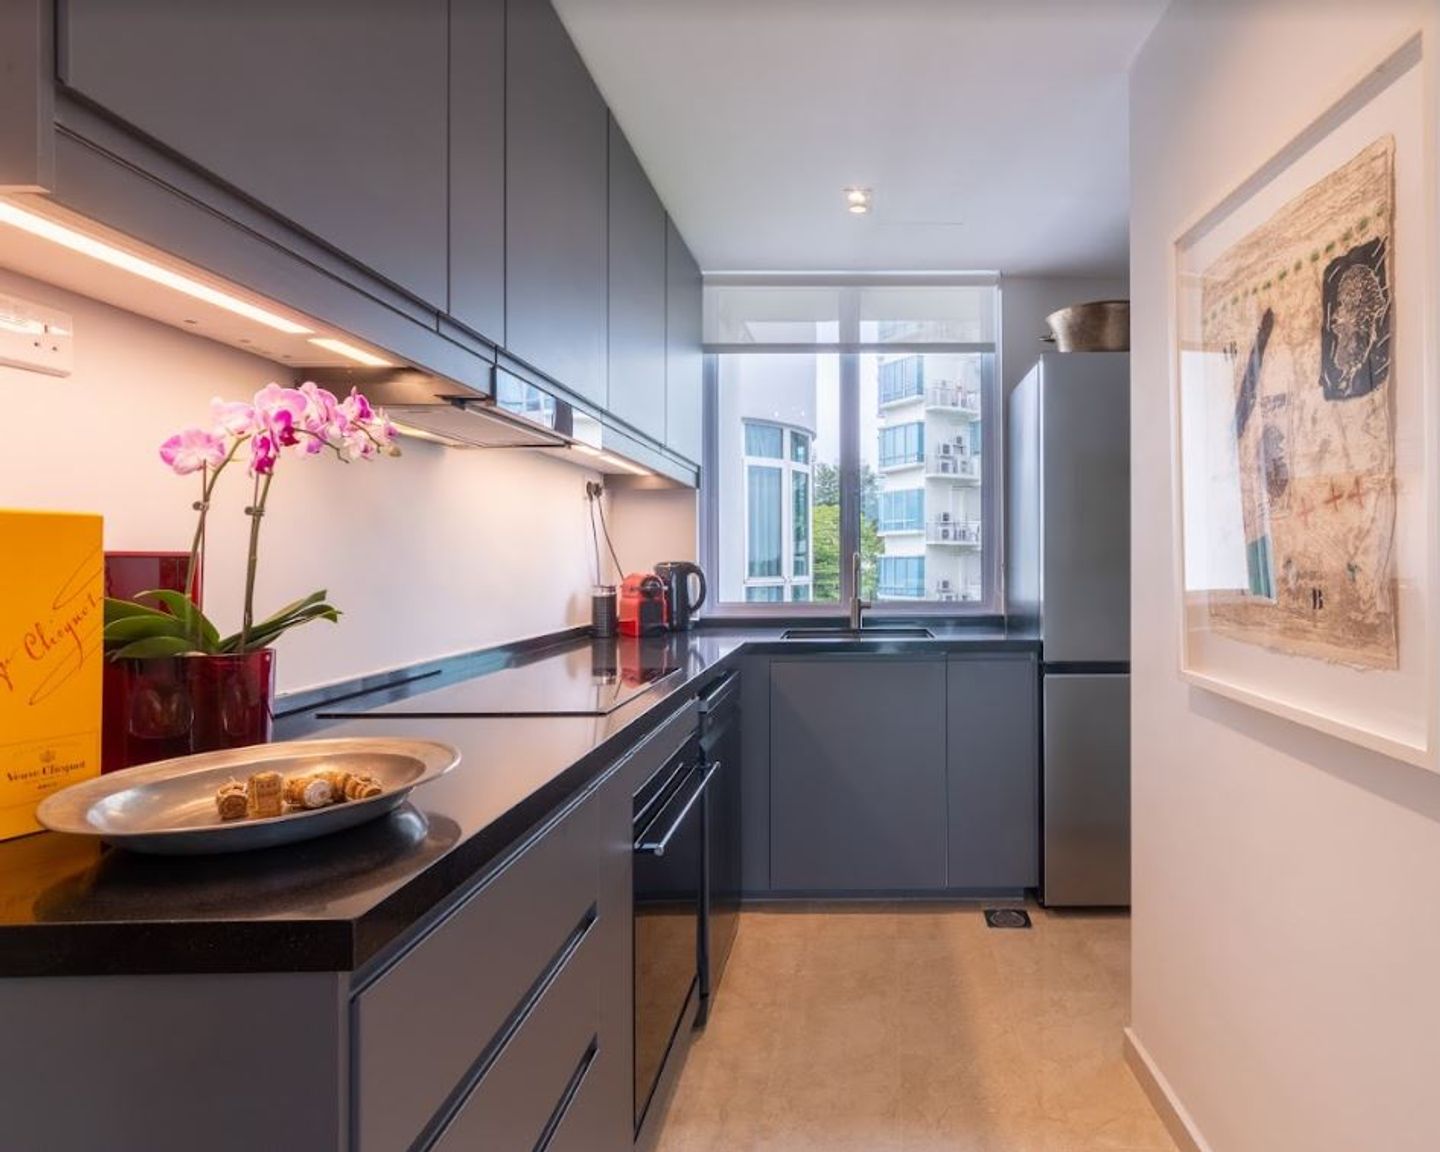 Compact Modern Kitchen Design With Dark Grey Cabinets